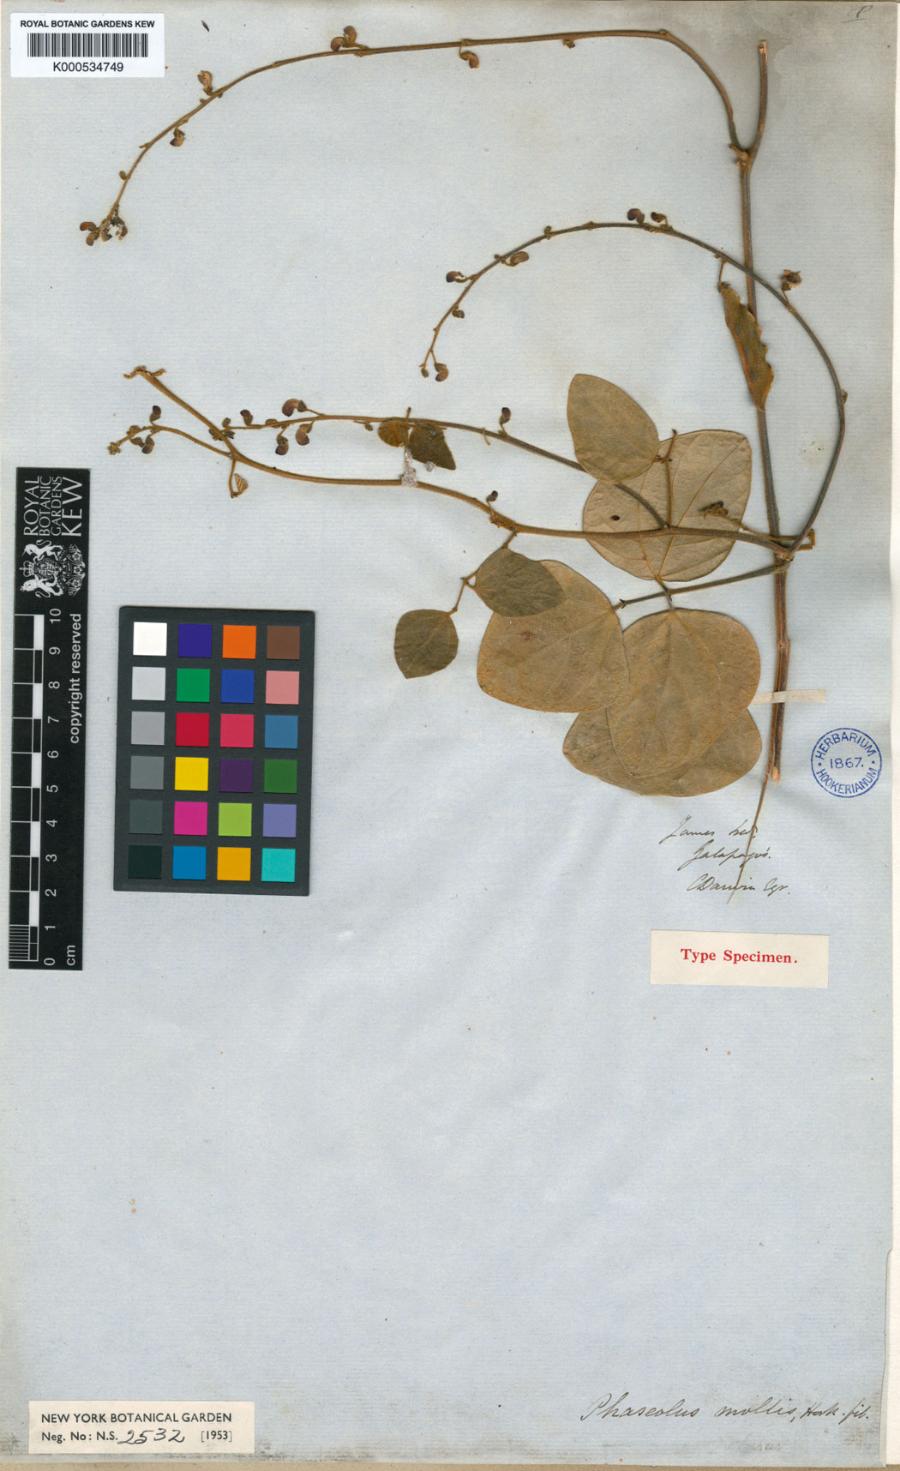 Phaseolus mollis Hook – gatunek pnącza z rodziny bobowatych, zebrany przez Karola Darwina podczas jego pionierskich ekspedycji na wyspy archipelagu Galapagos. Na arkuszu widnieje podpis brytyjskiego przyrodnika.